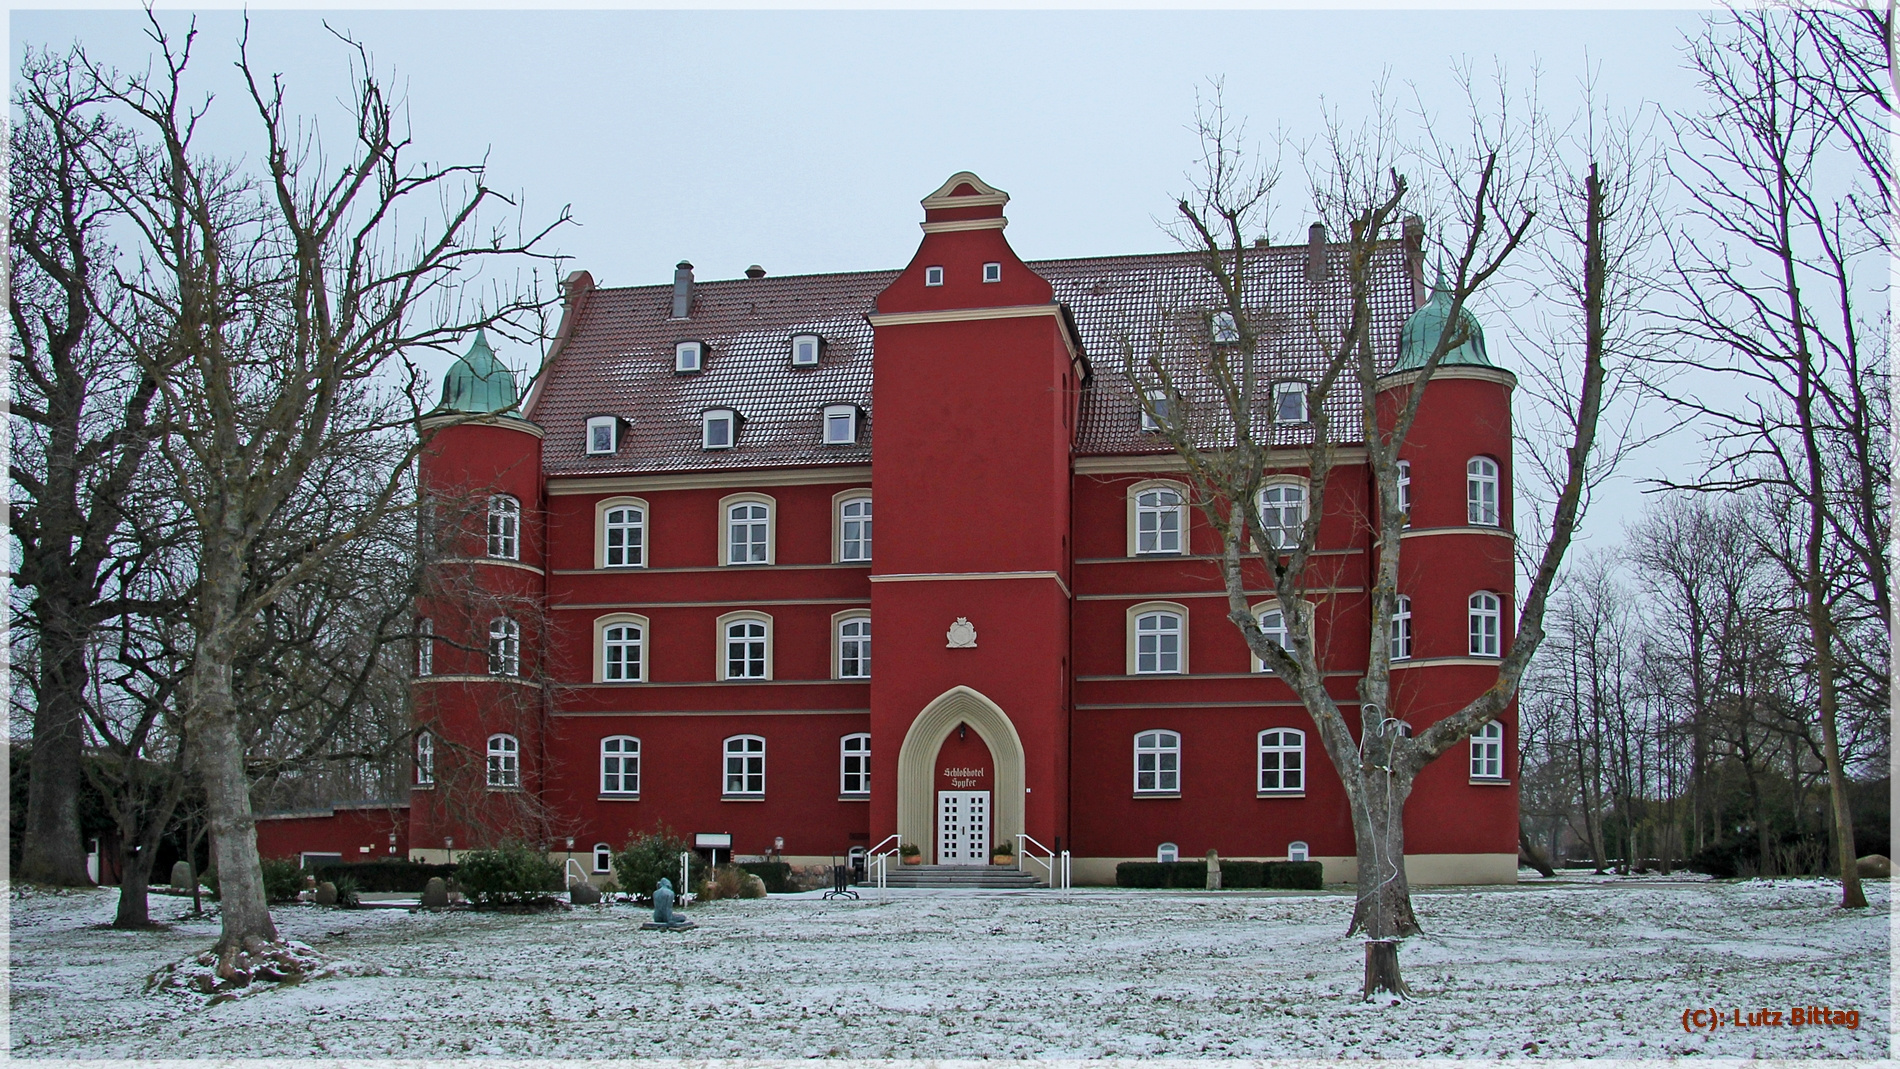 Schloss Spyker